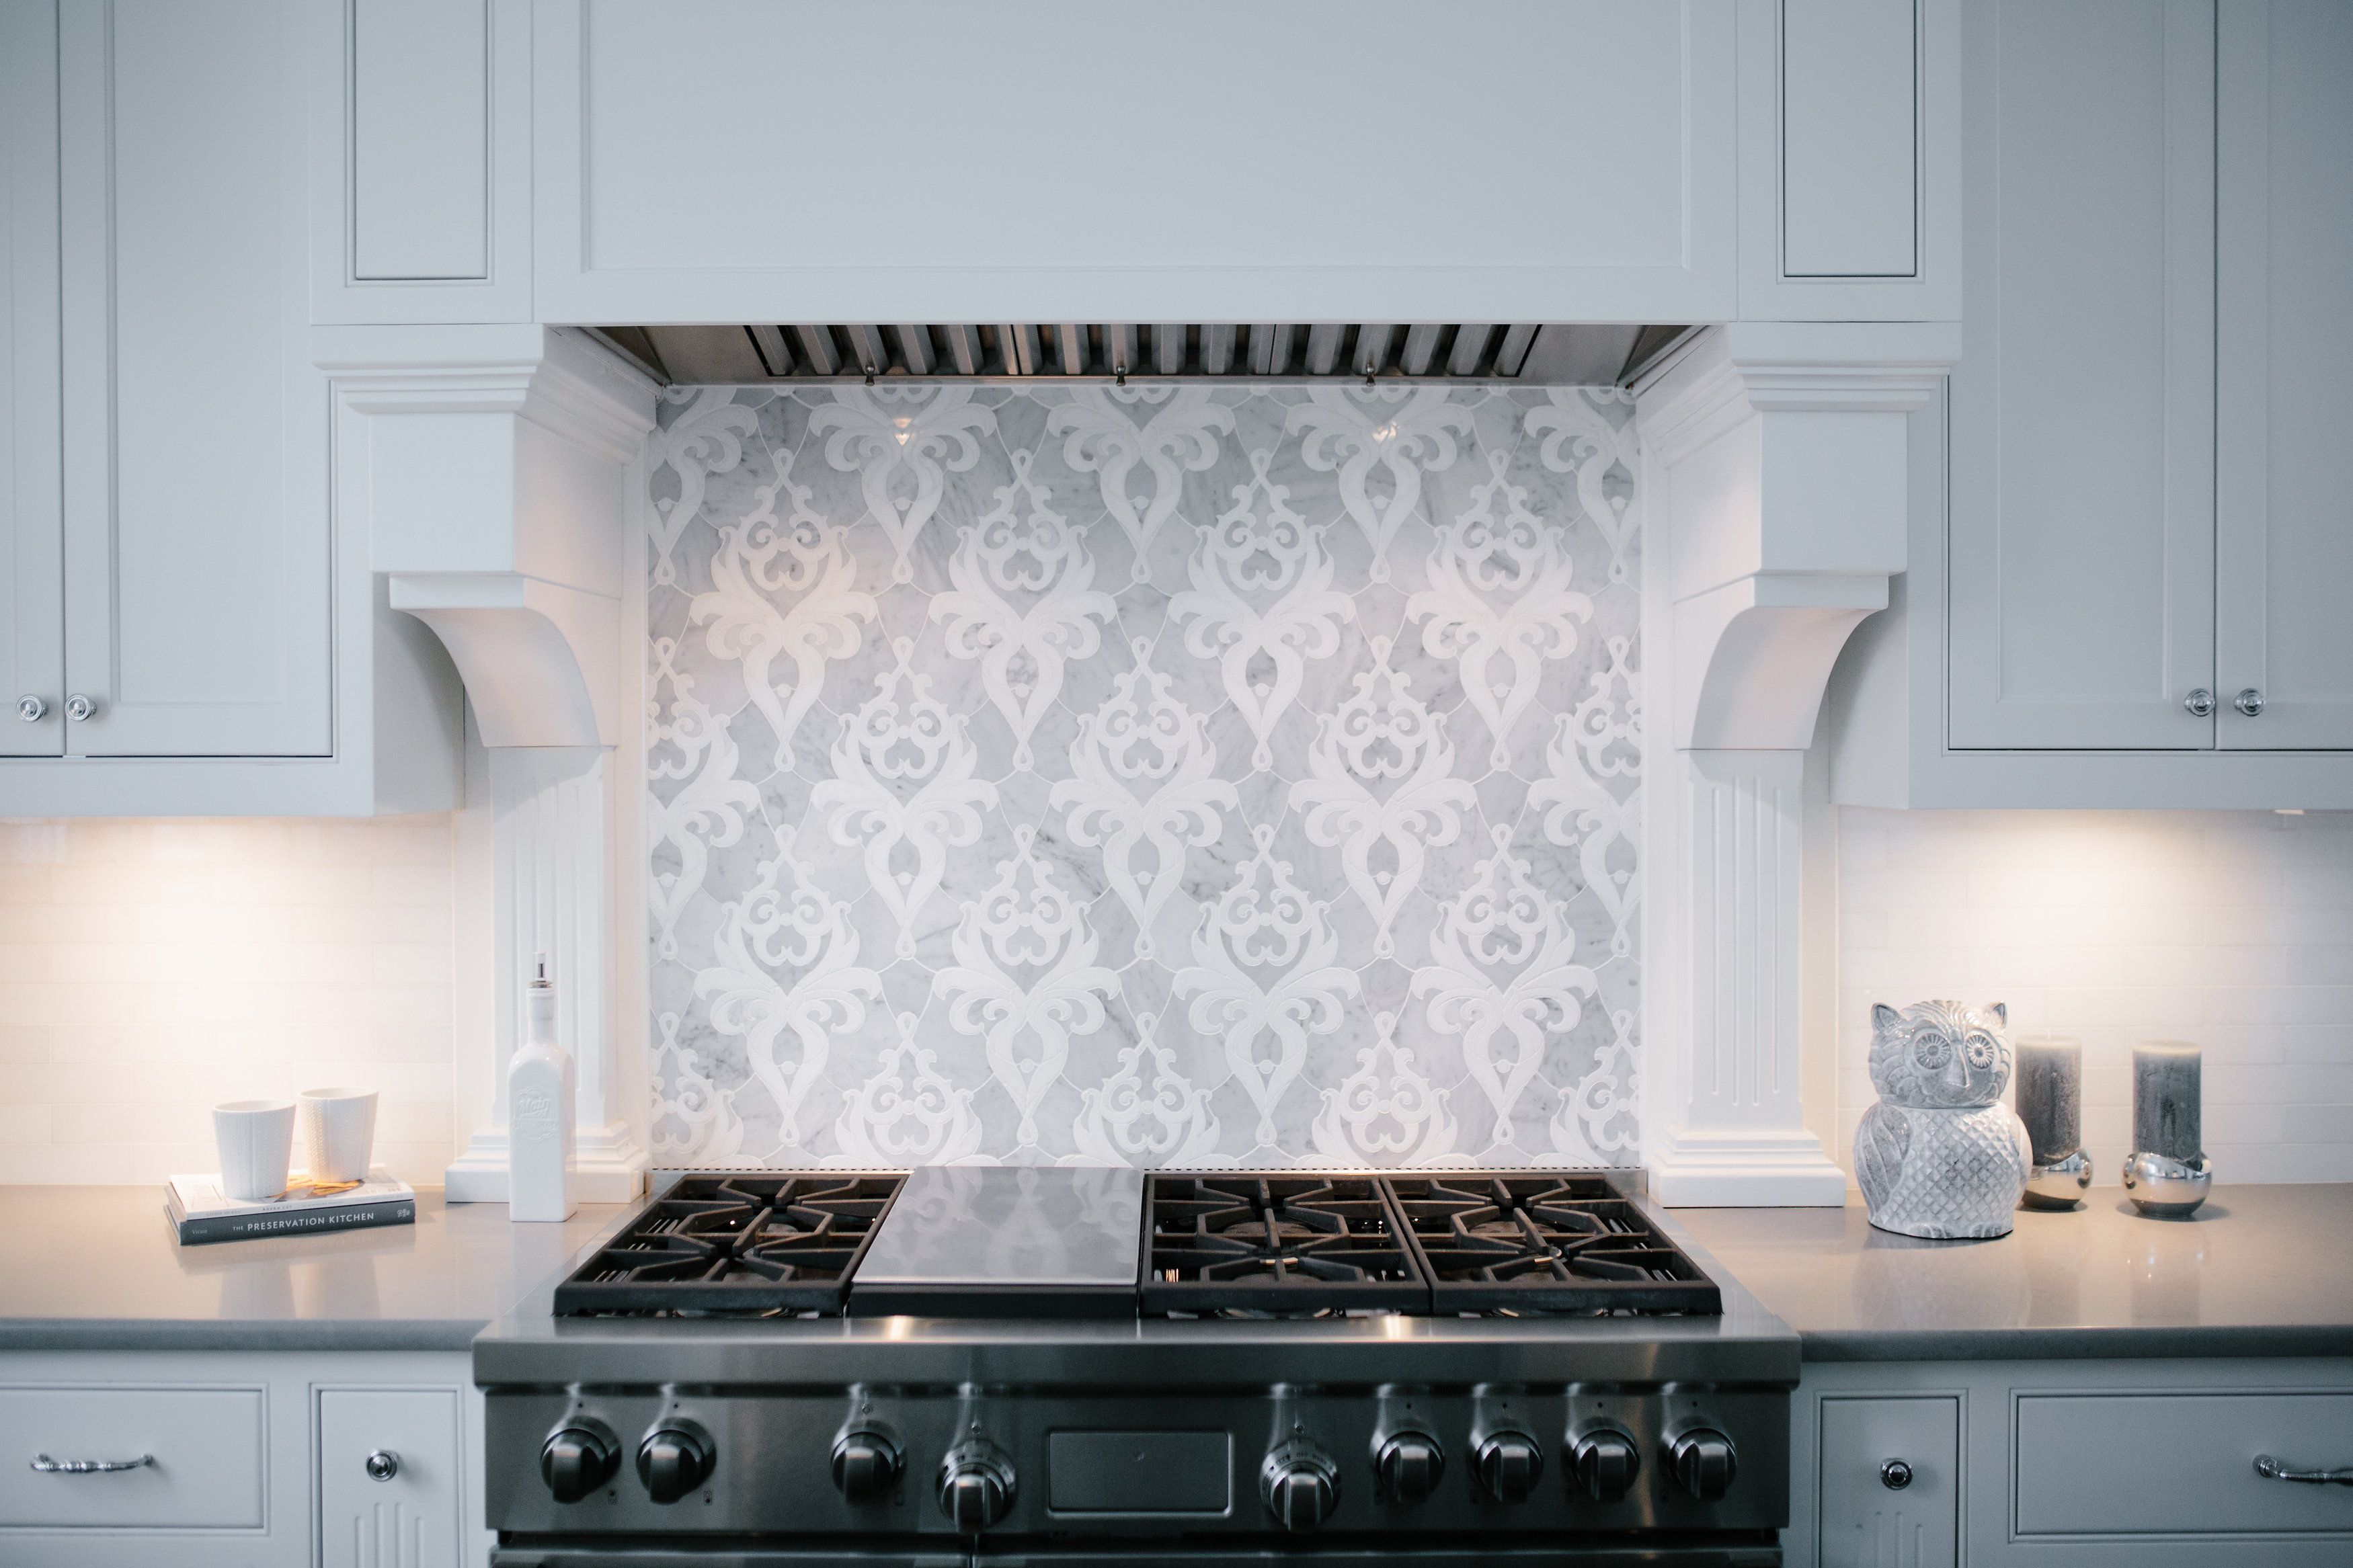 18 Stylish Range Hoods   Ideas for Kitchen Hoods for Ovens